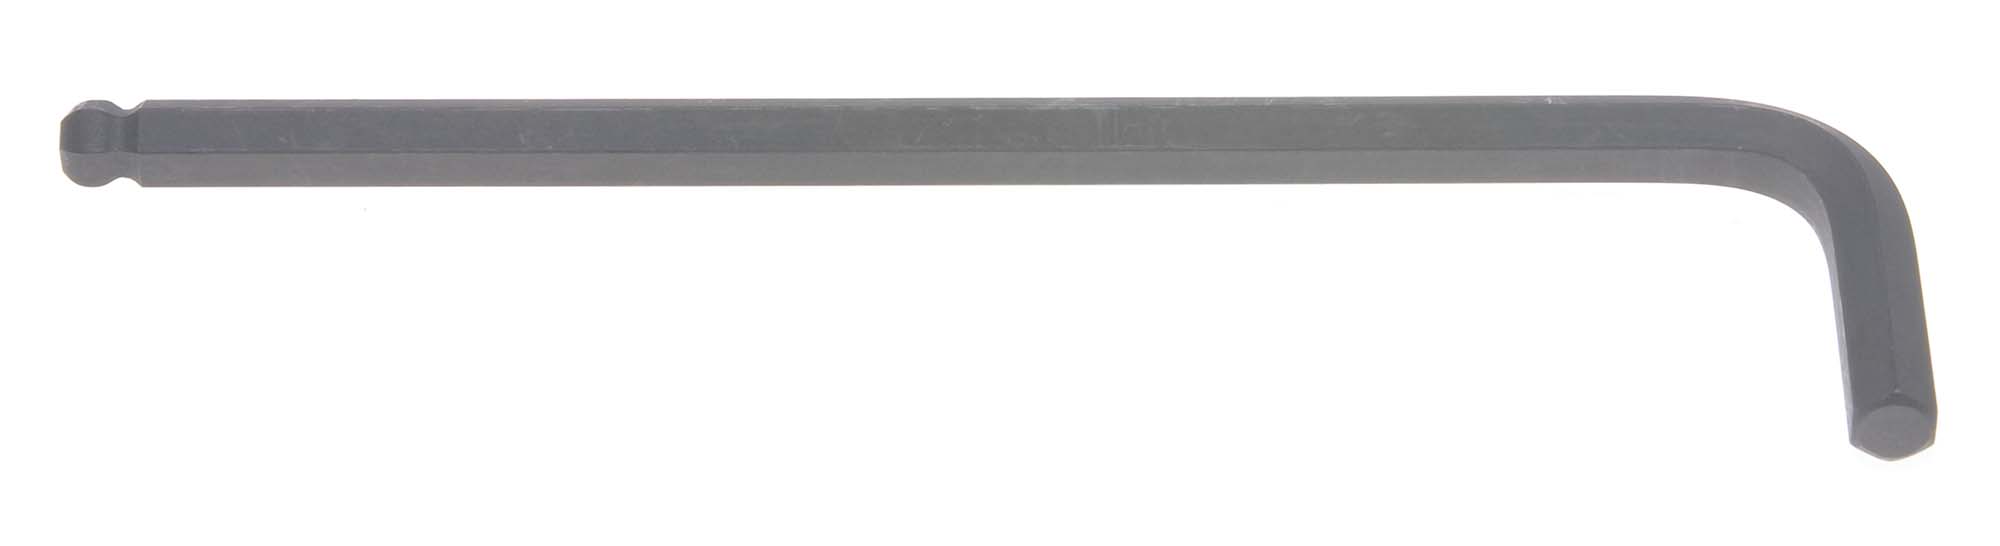 3mm Bondhus Balldriver L-Wrench Hex Key